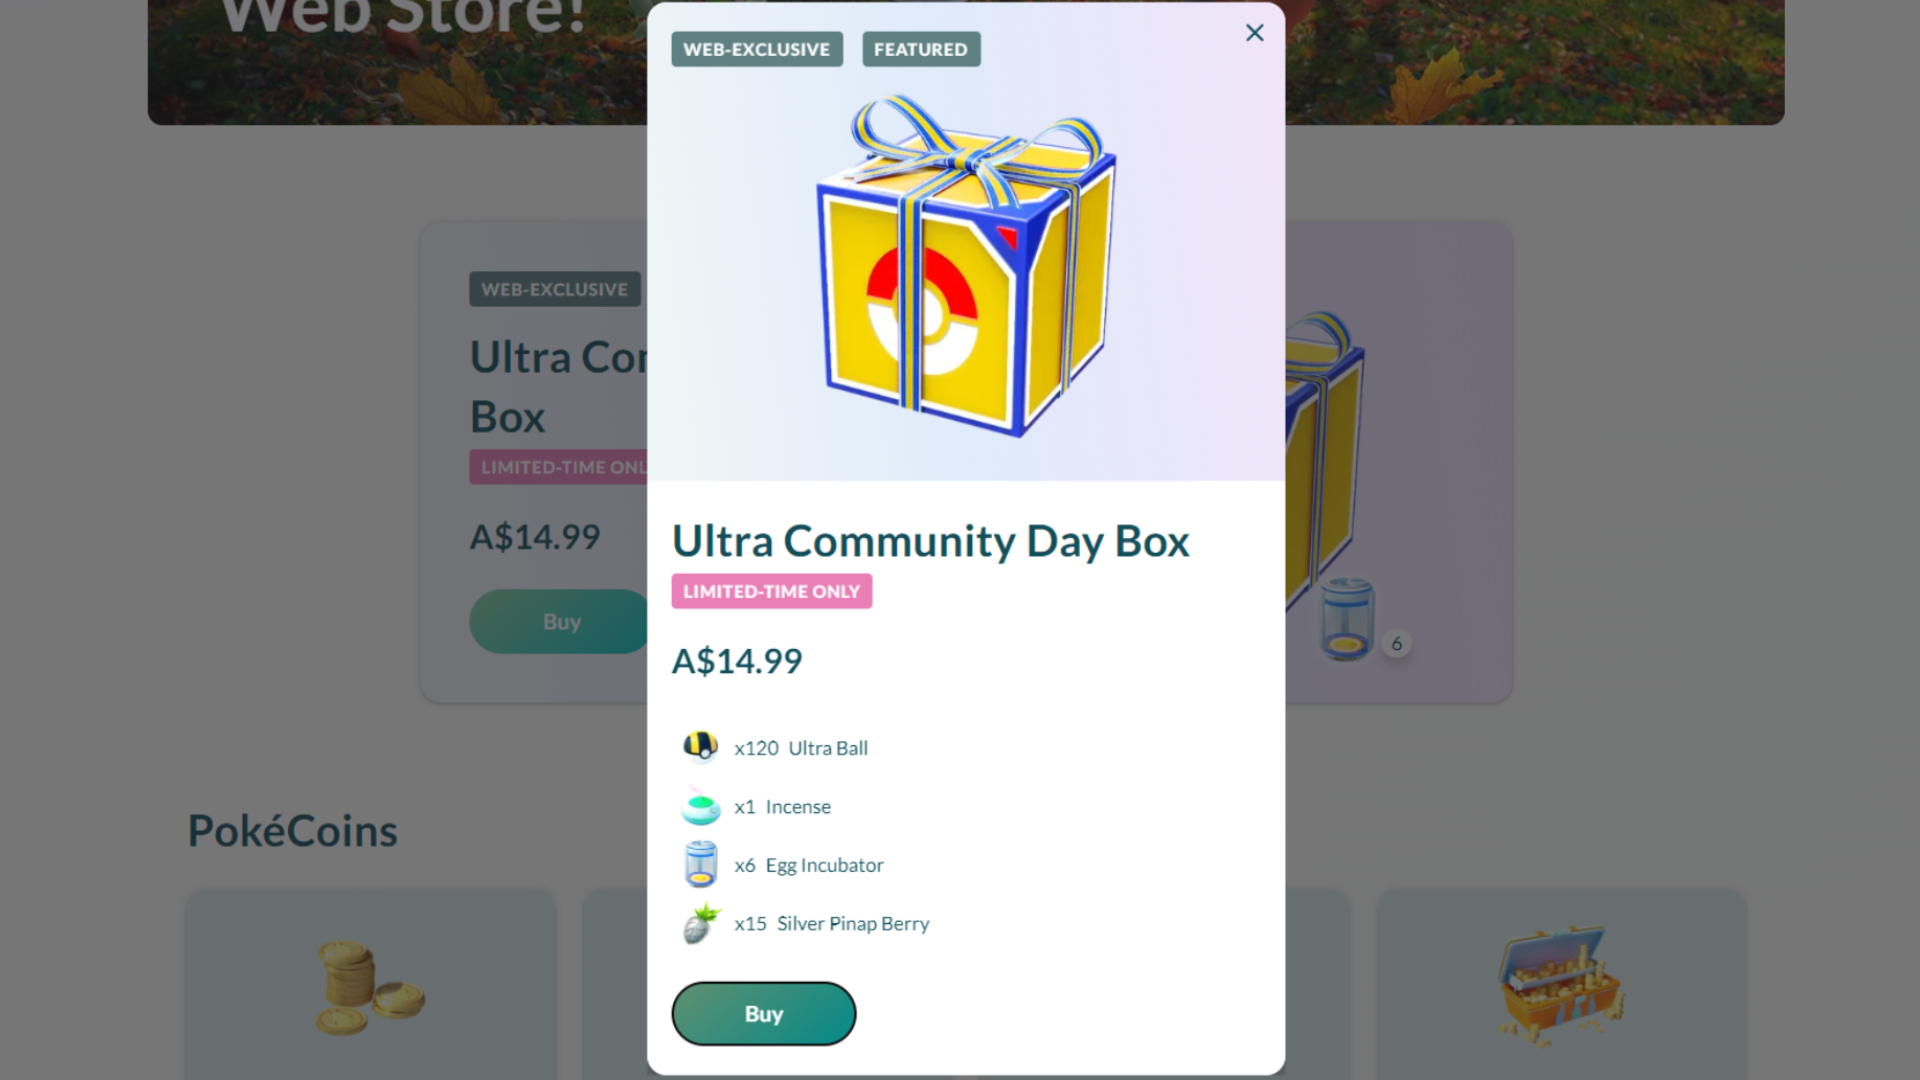 Pokemon Go Community Day Rowlet Ultra Community Day Box via Web Store